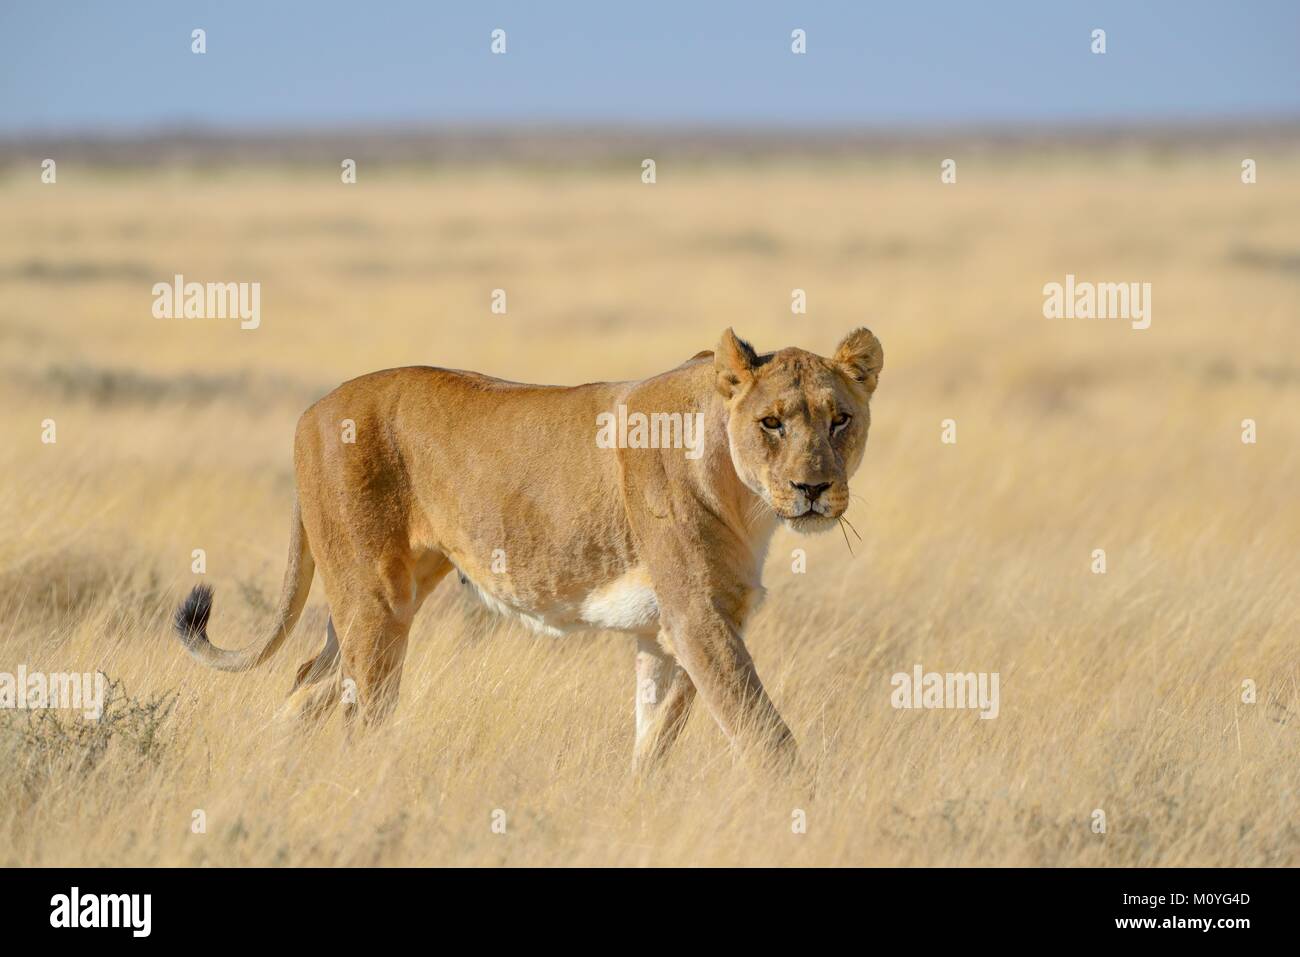 Lioness (Panthera leo) in dry grassland,Etosha National Park,Namibia Stock Photo